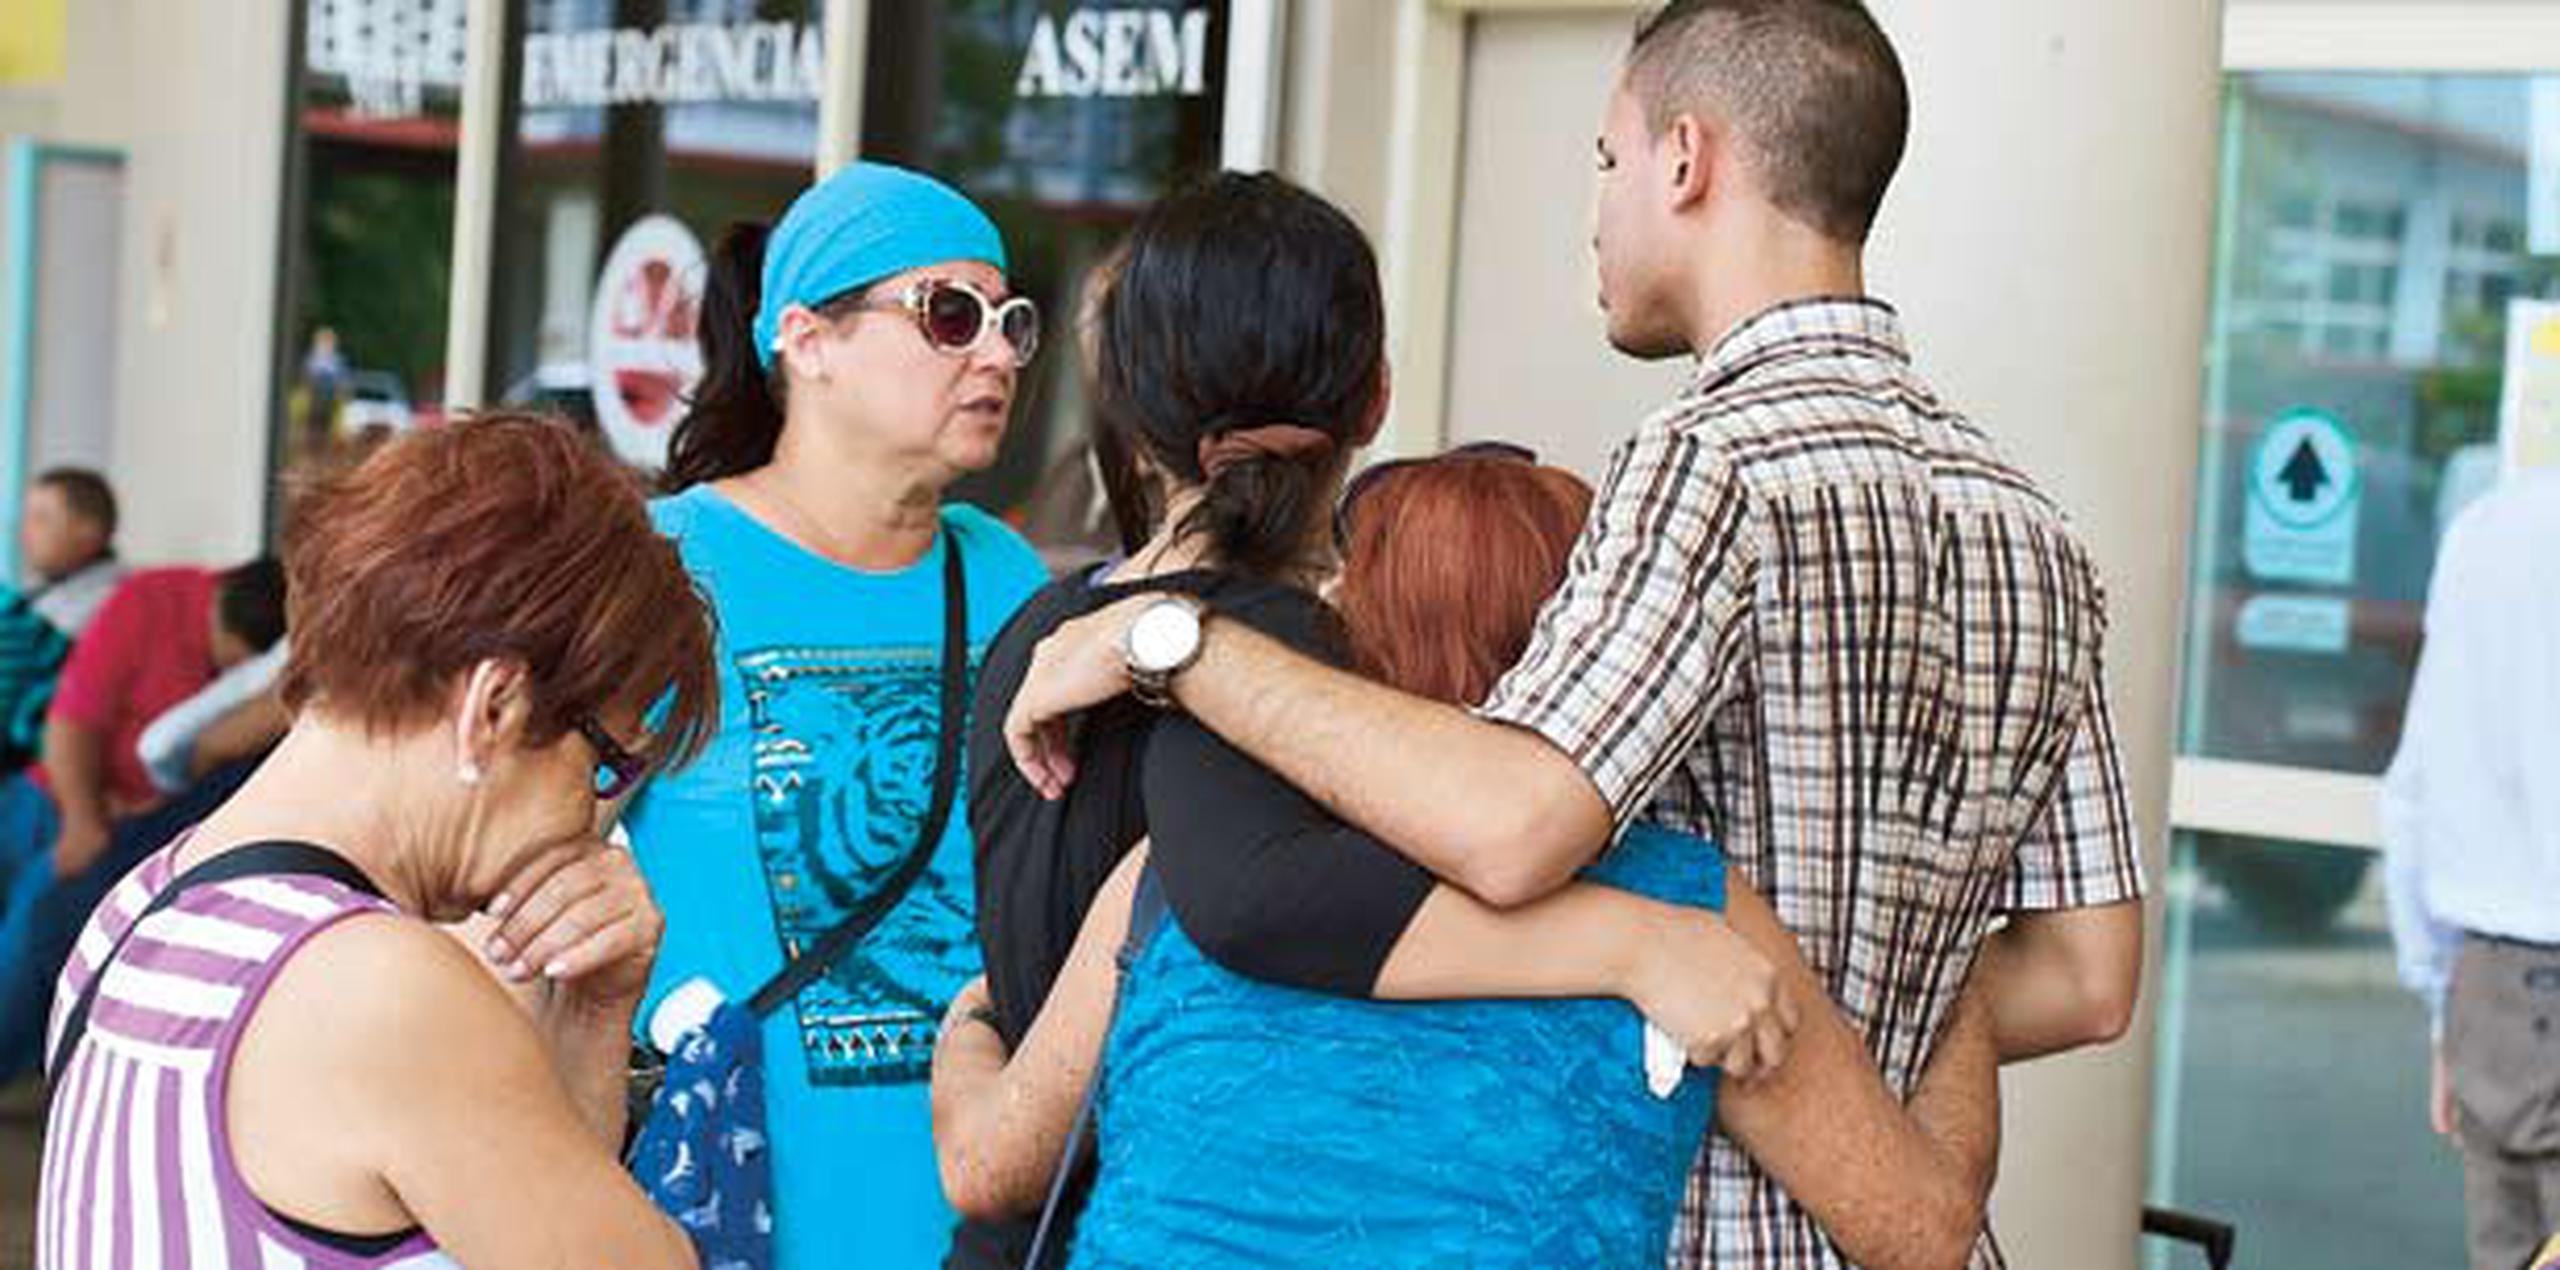 Miembros de la congregación Testigos de Jehová llegaron al Centro Médico en Río Piedras a brindar apoyo a familiares de la víctima. (luis.alcaladelolmo@gfrmedia.com)